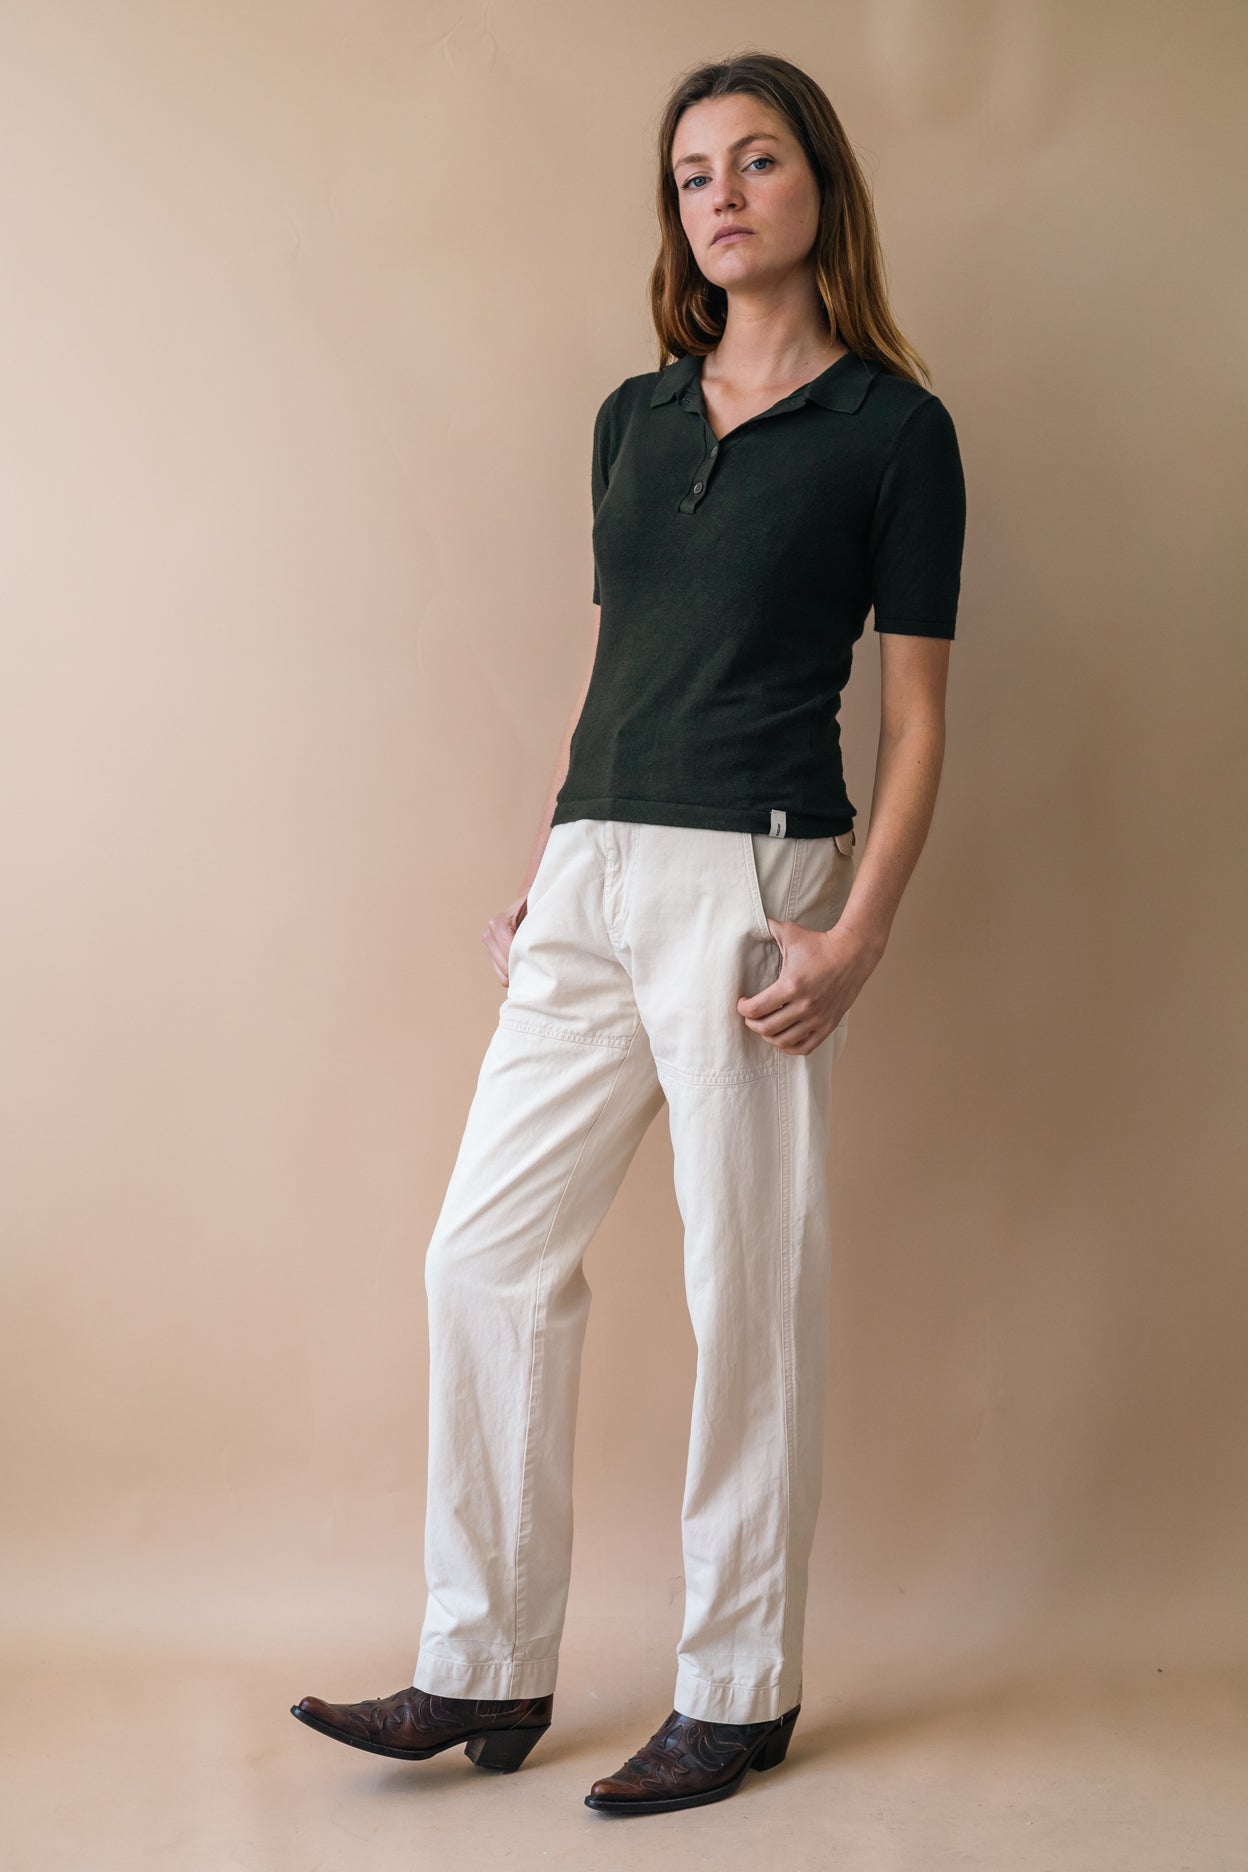 Pantalon MONCLER pour femme écoresponsable et upcyclé| Sapar